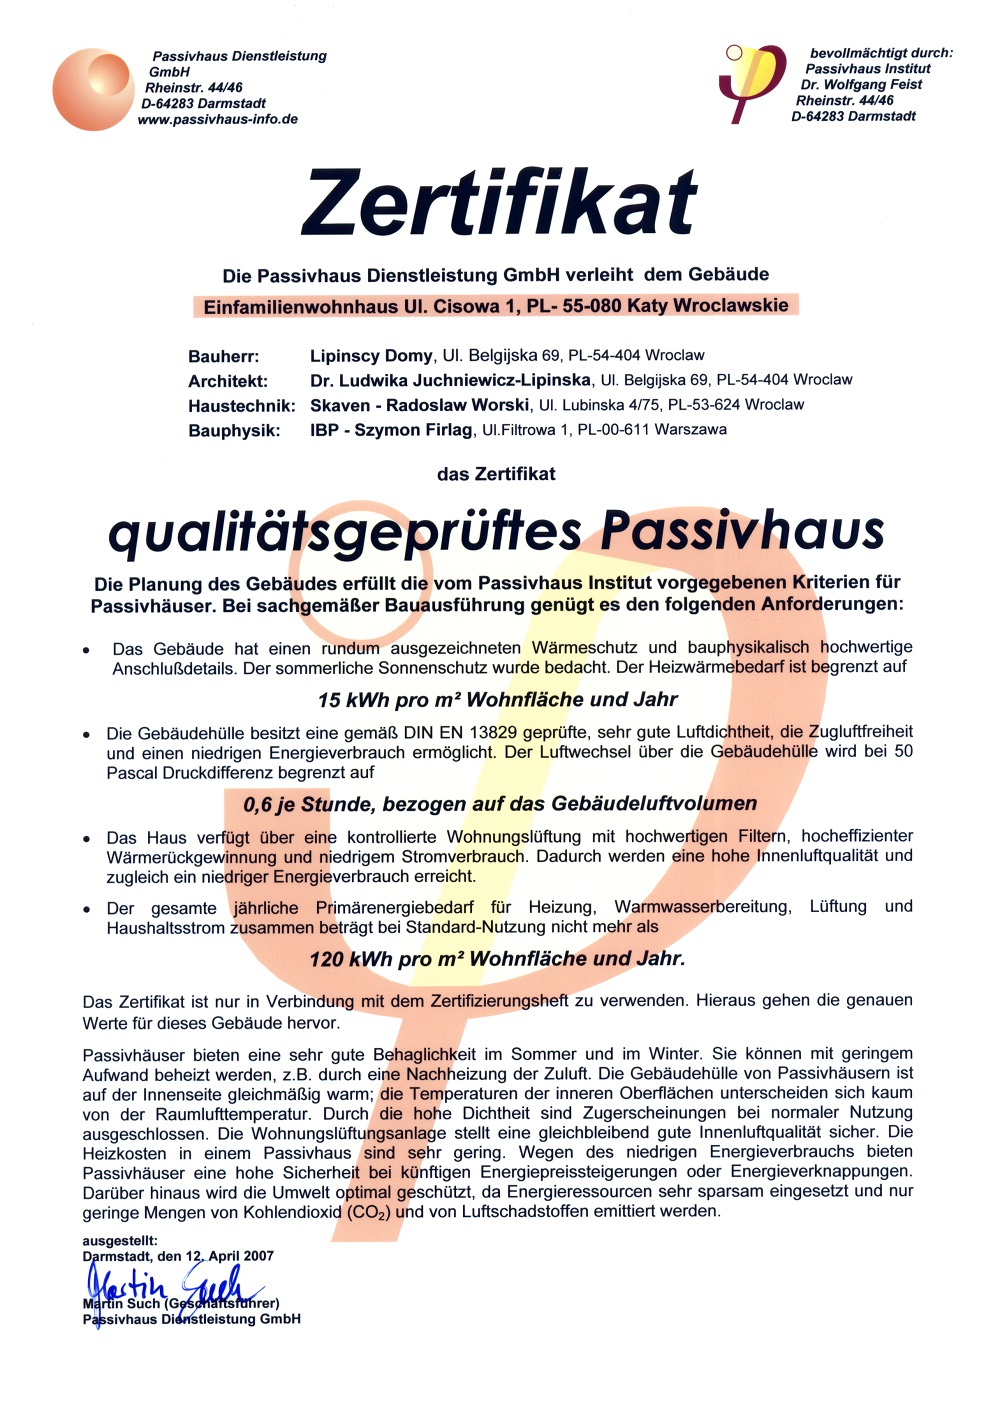 Certyfikat Instytutu Budynków Pasywnych w Darmstadt